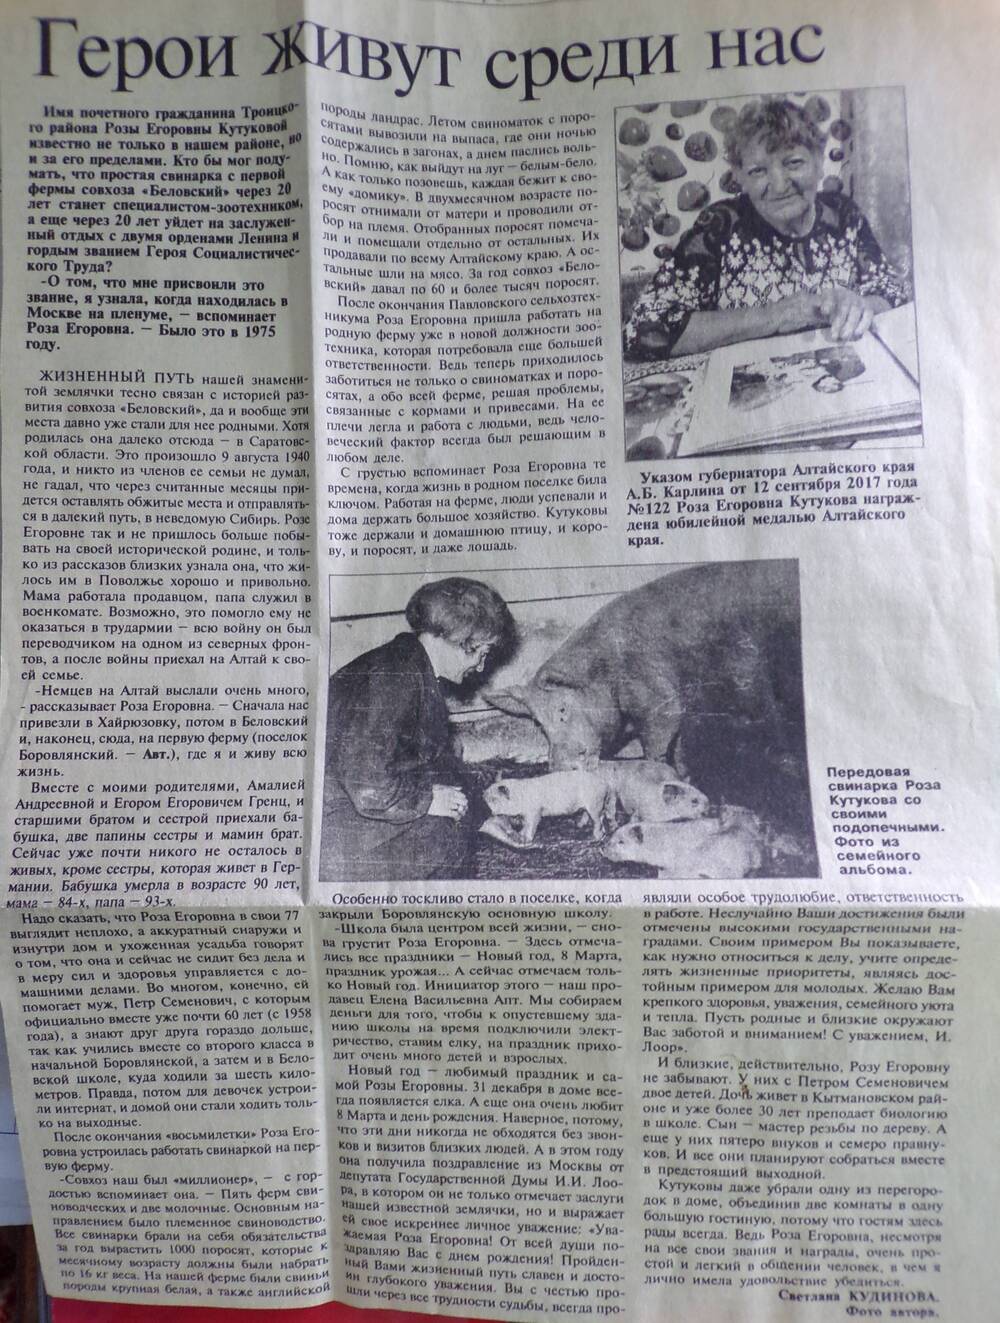 Статья из газеты «Коммунистический труд». 1985 г.